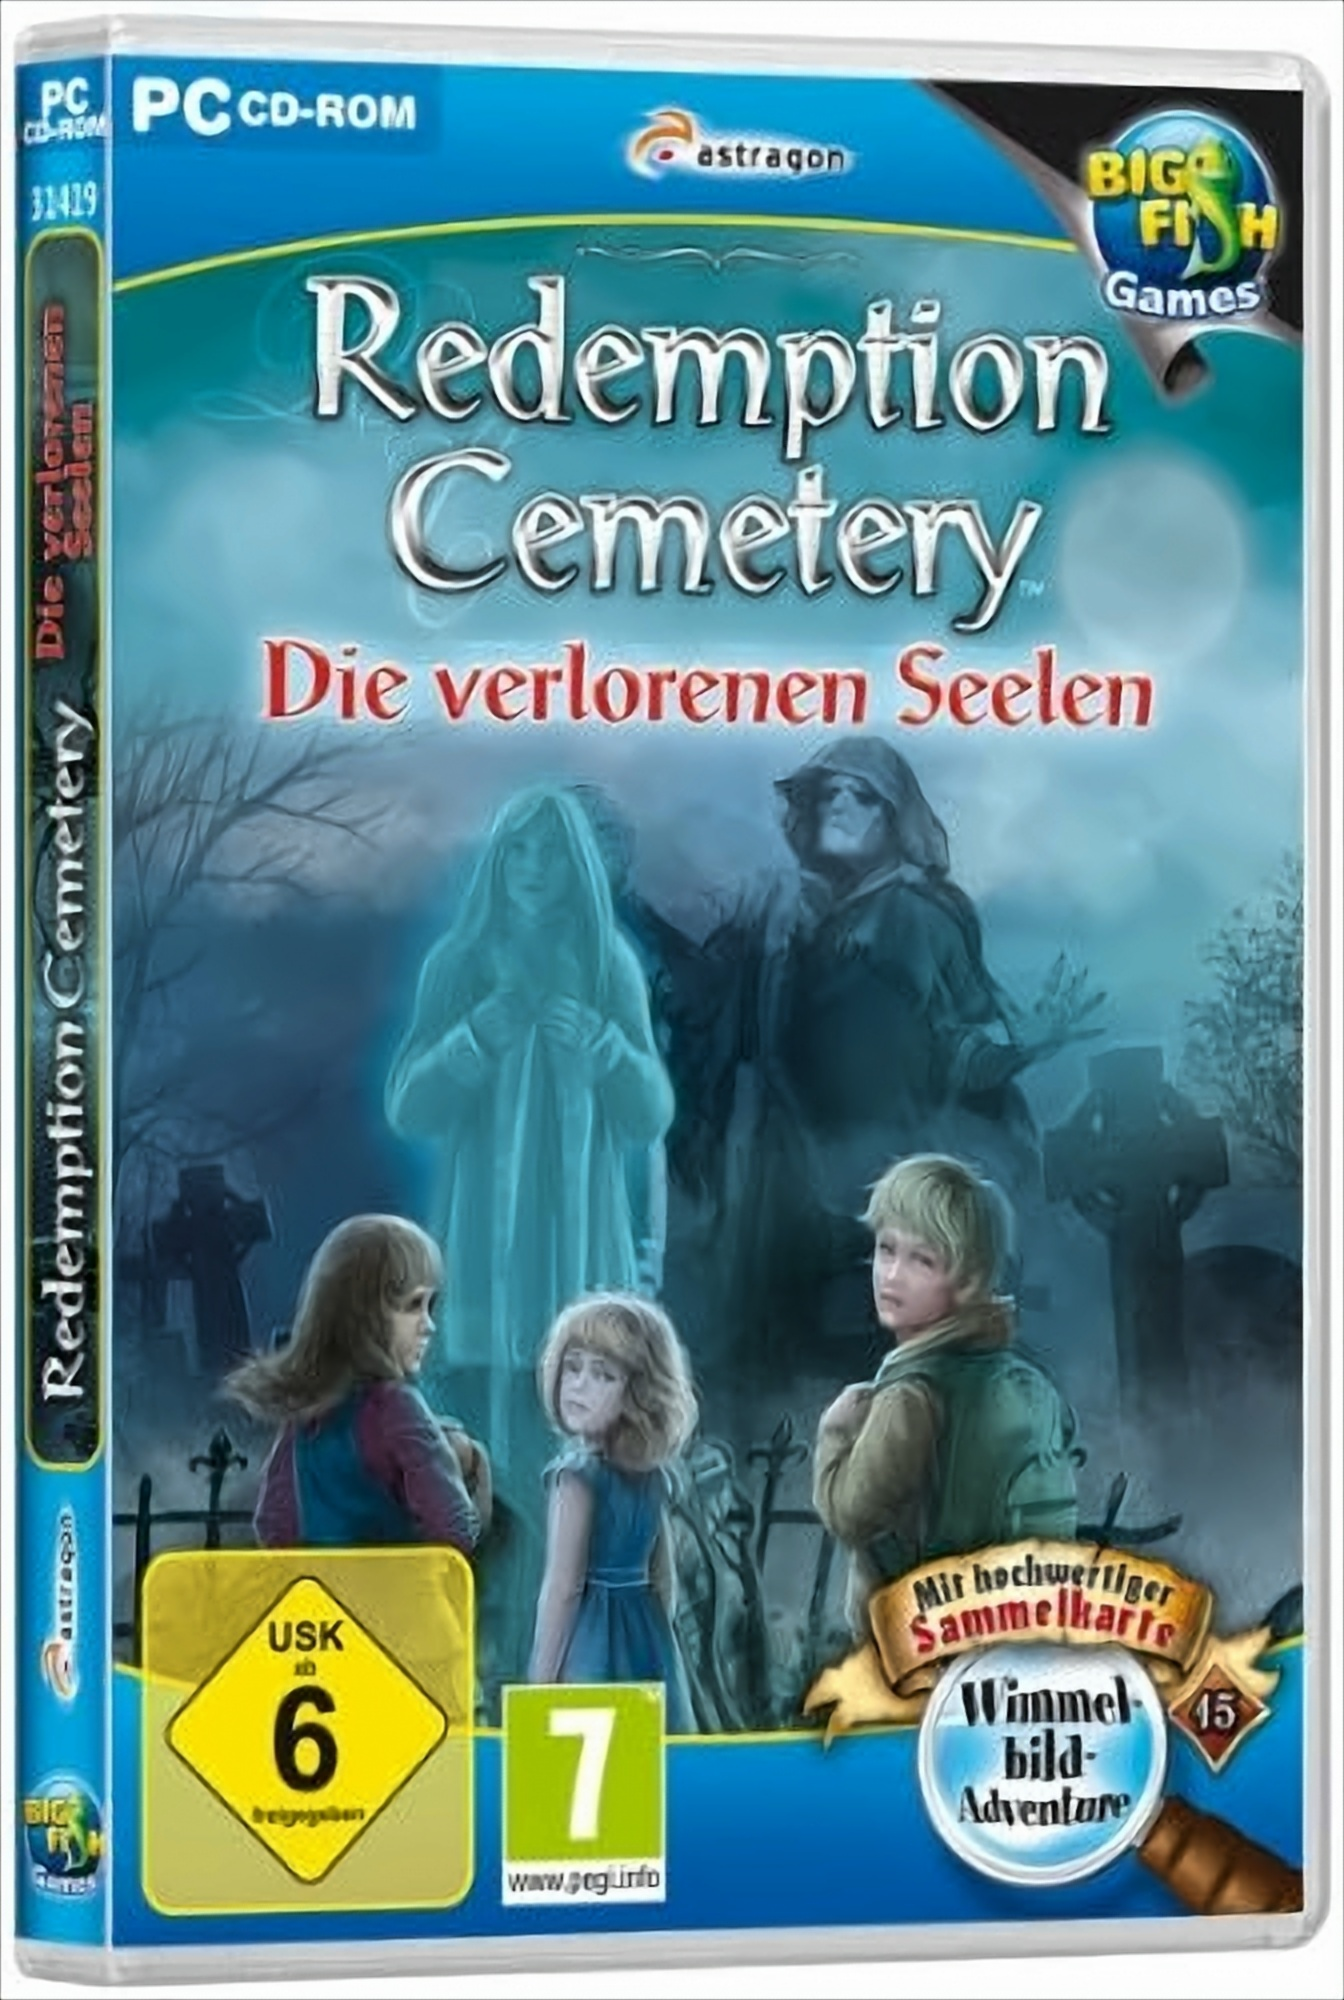 - [PC] Die Seelen verlorenen Cemetery: Redemption